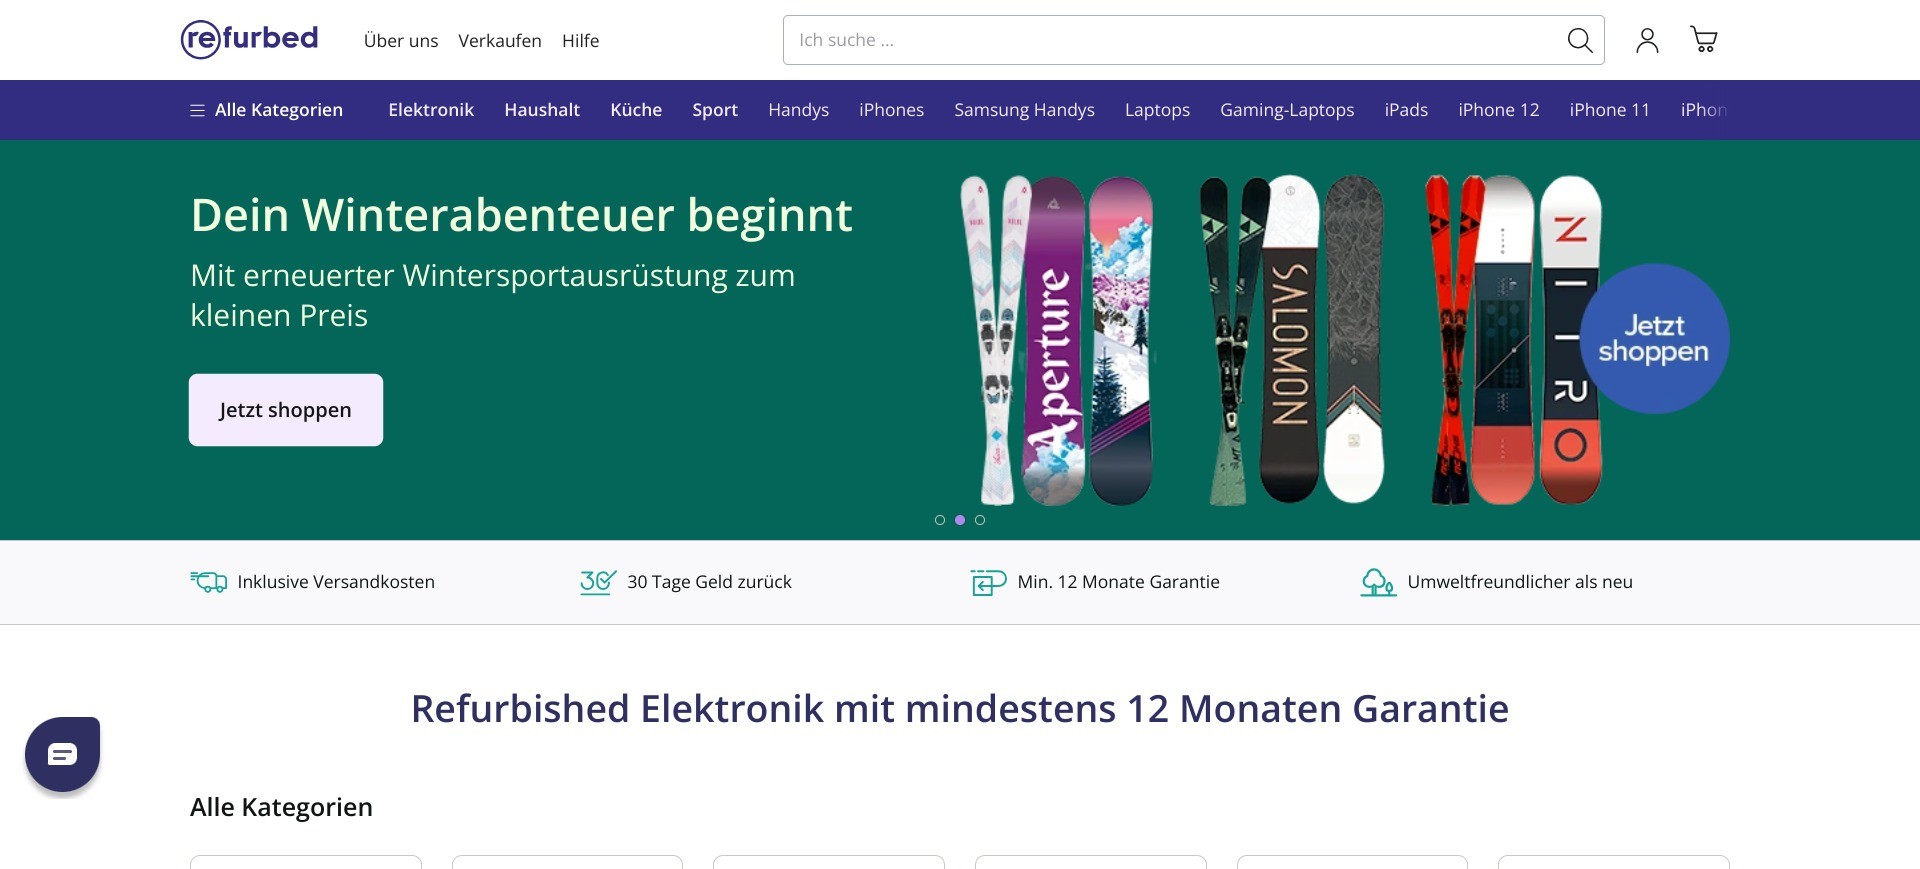 Screenshot of the homepage of refurbed.de